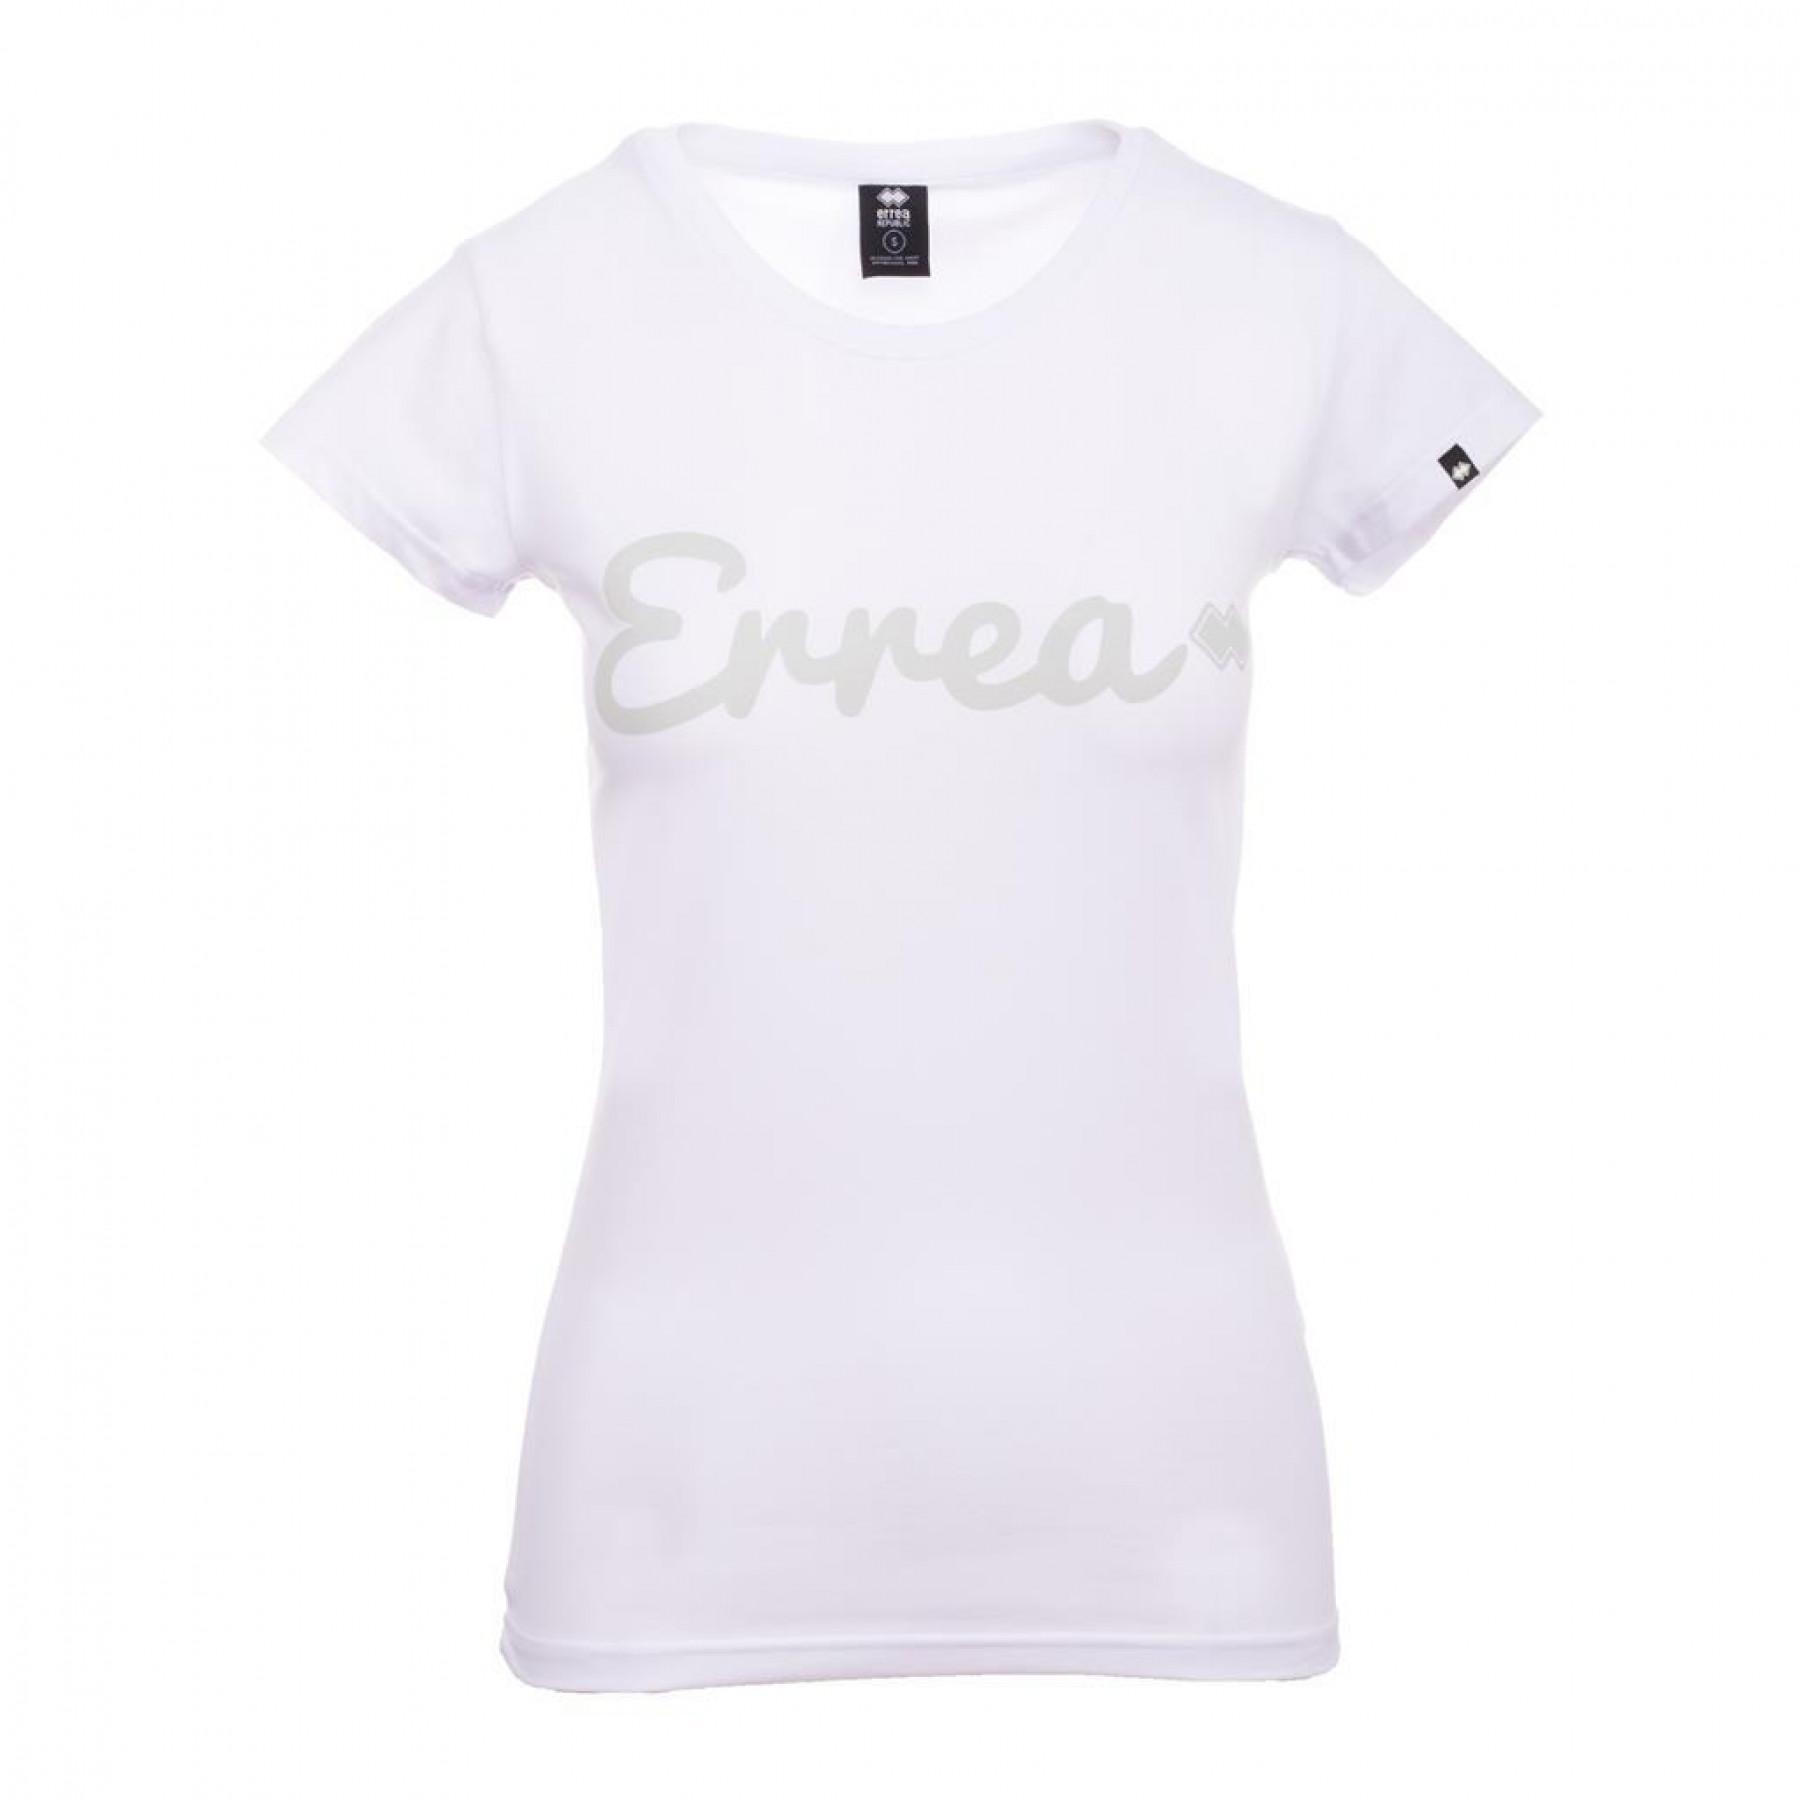 Women's T-shirt Errea trend